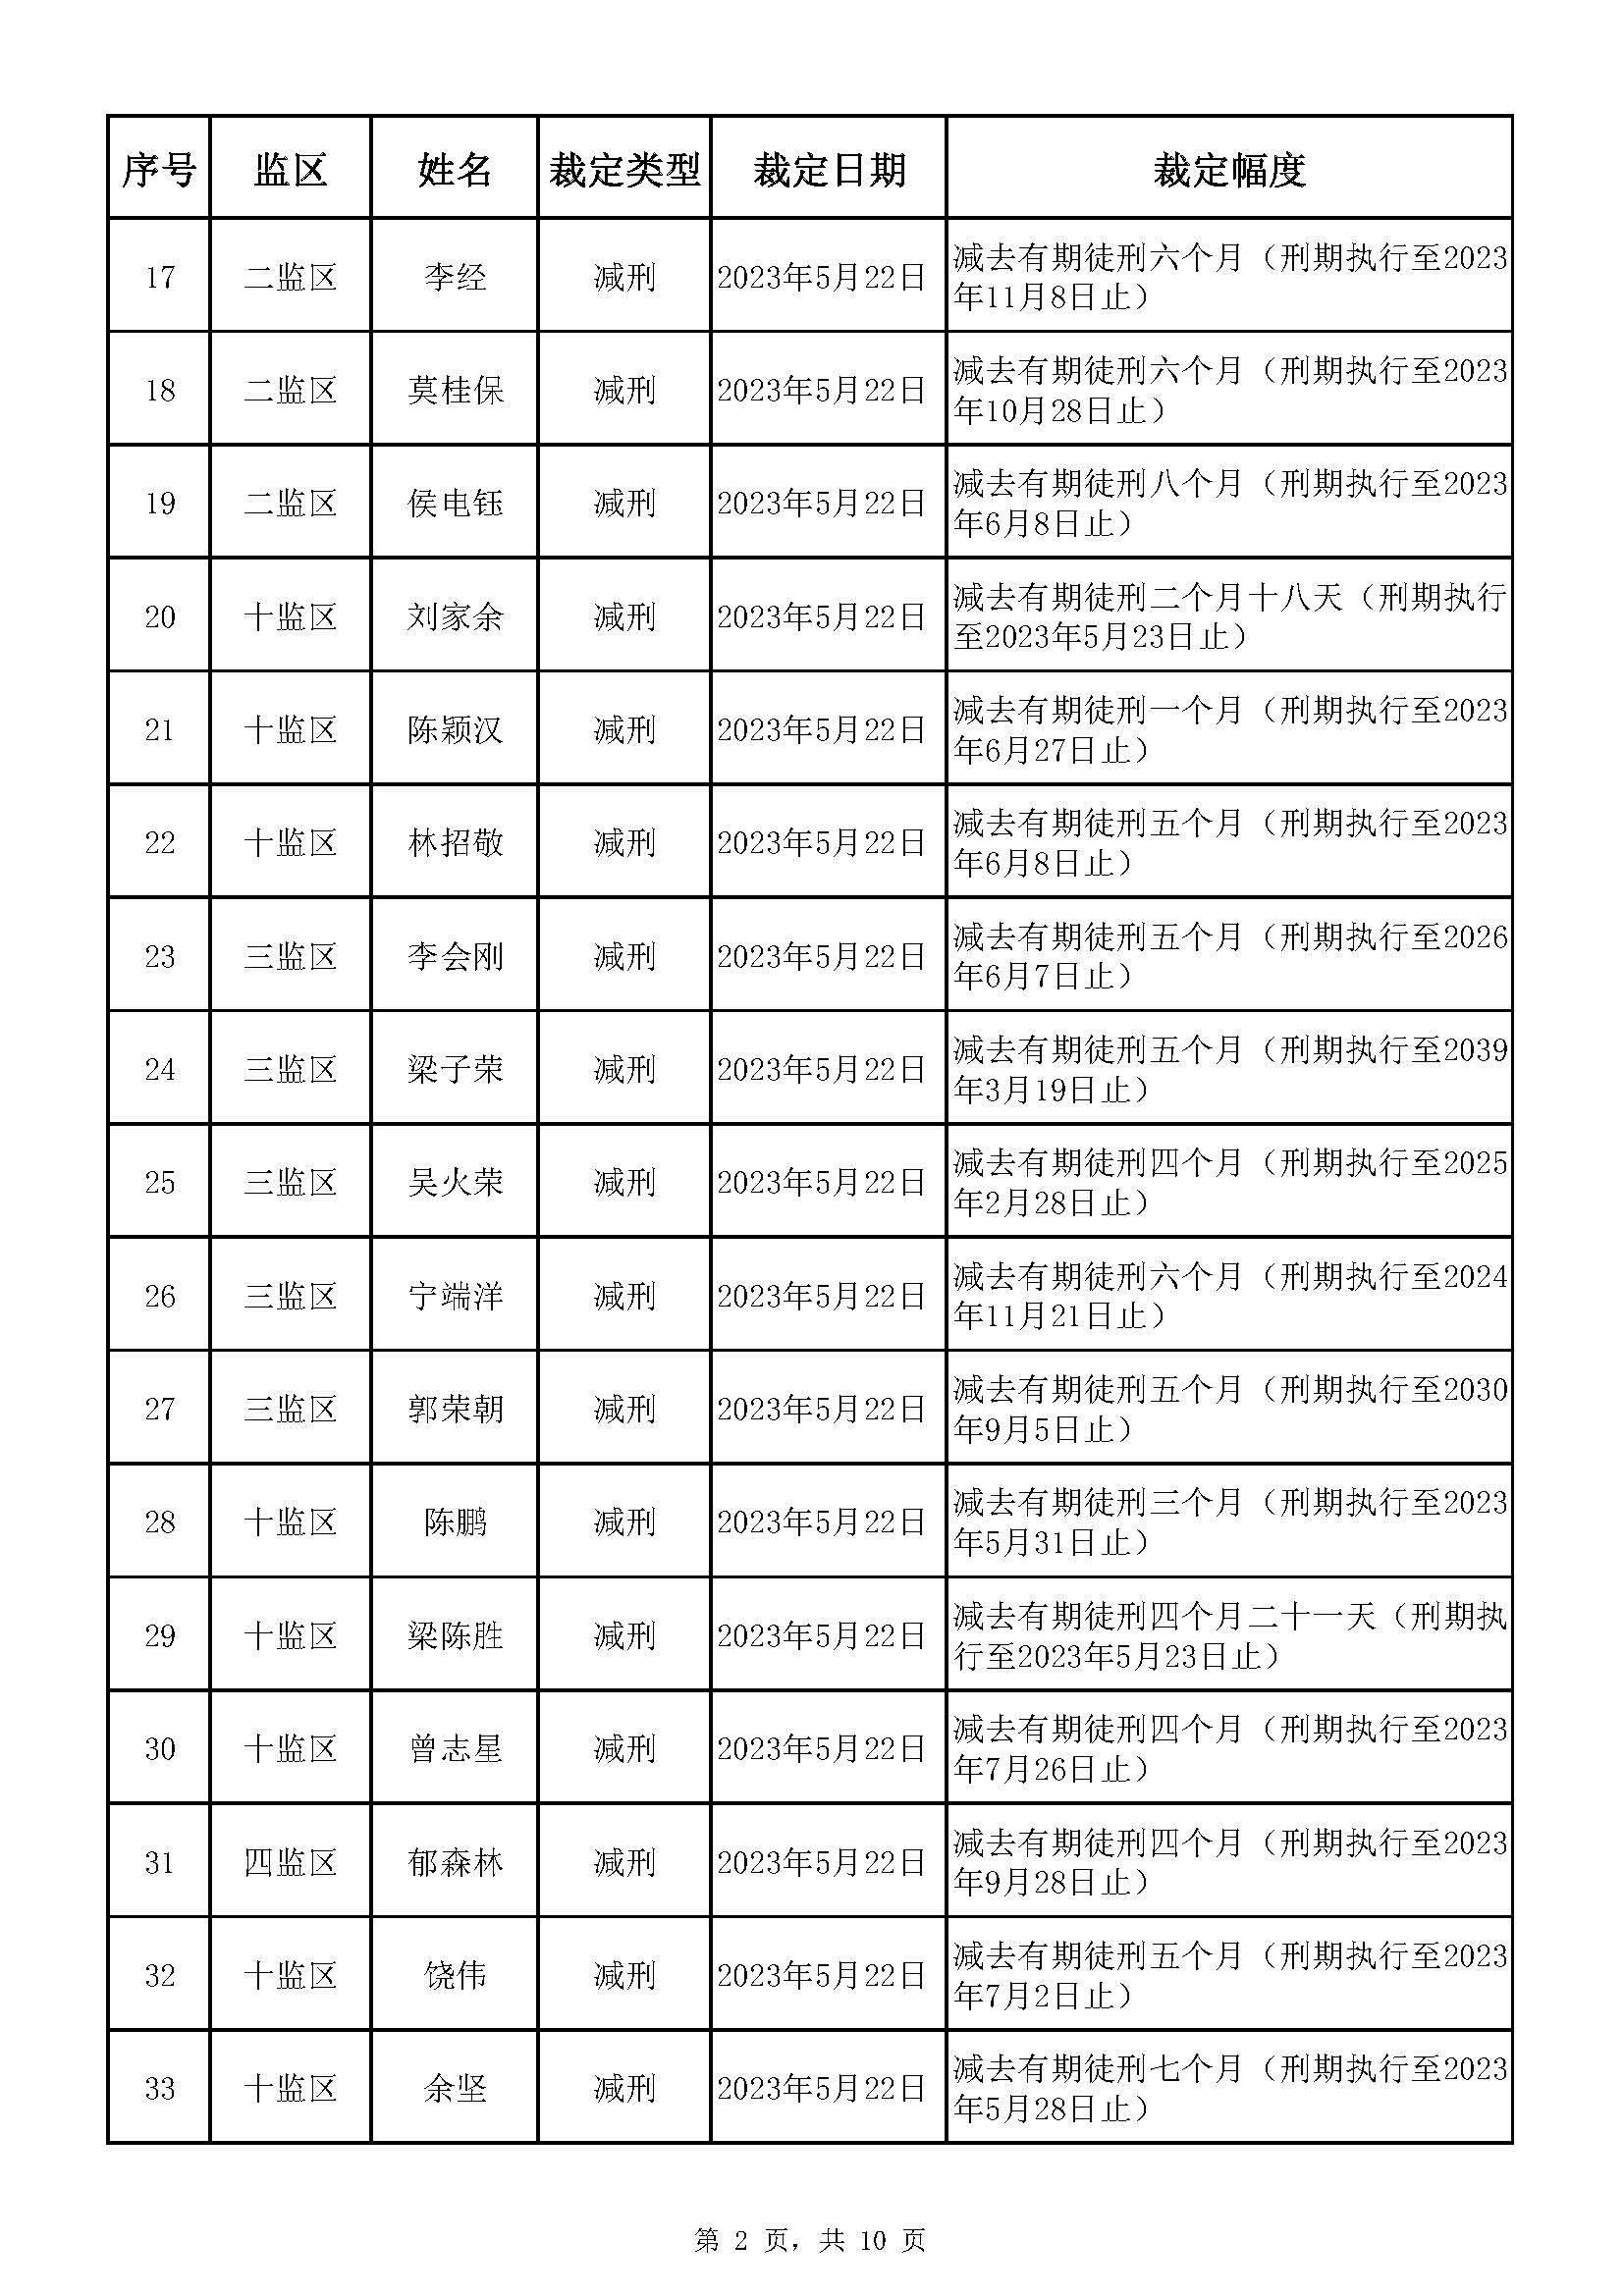 广东省明康监狱2023年第一批减刑假释裁定榜_页面_02.jpg